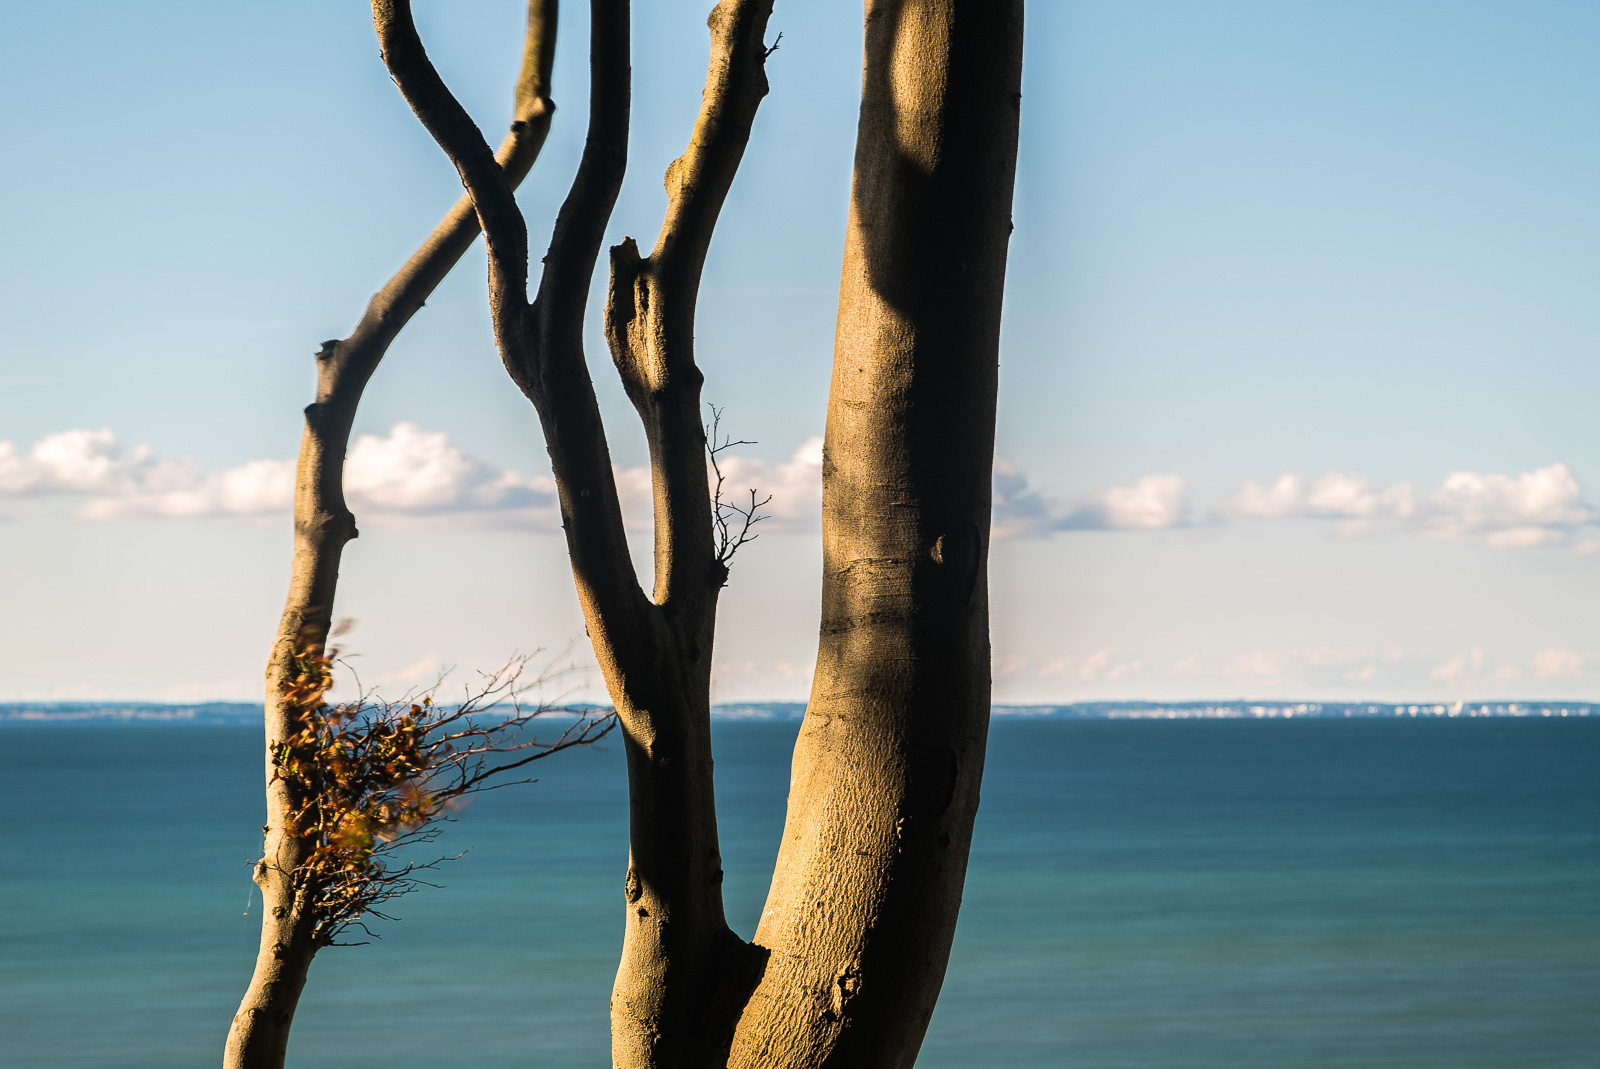 Ausschnitt eines Baumstamms in warmem Seitenlicht vor dem Hintergrund eines türkisgrünen Meers und darüber einer Reihe Wolken